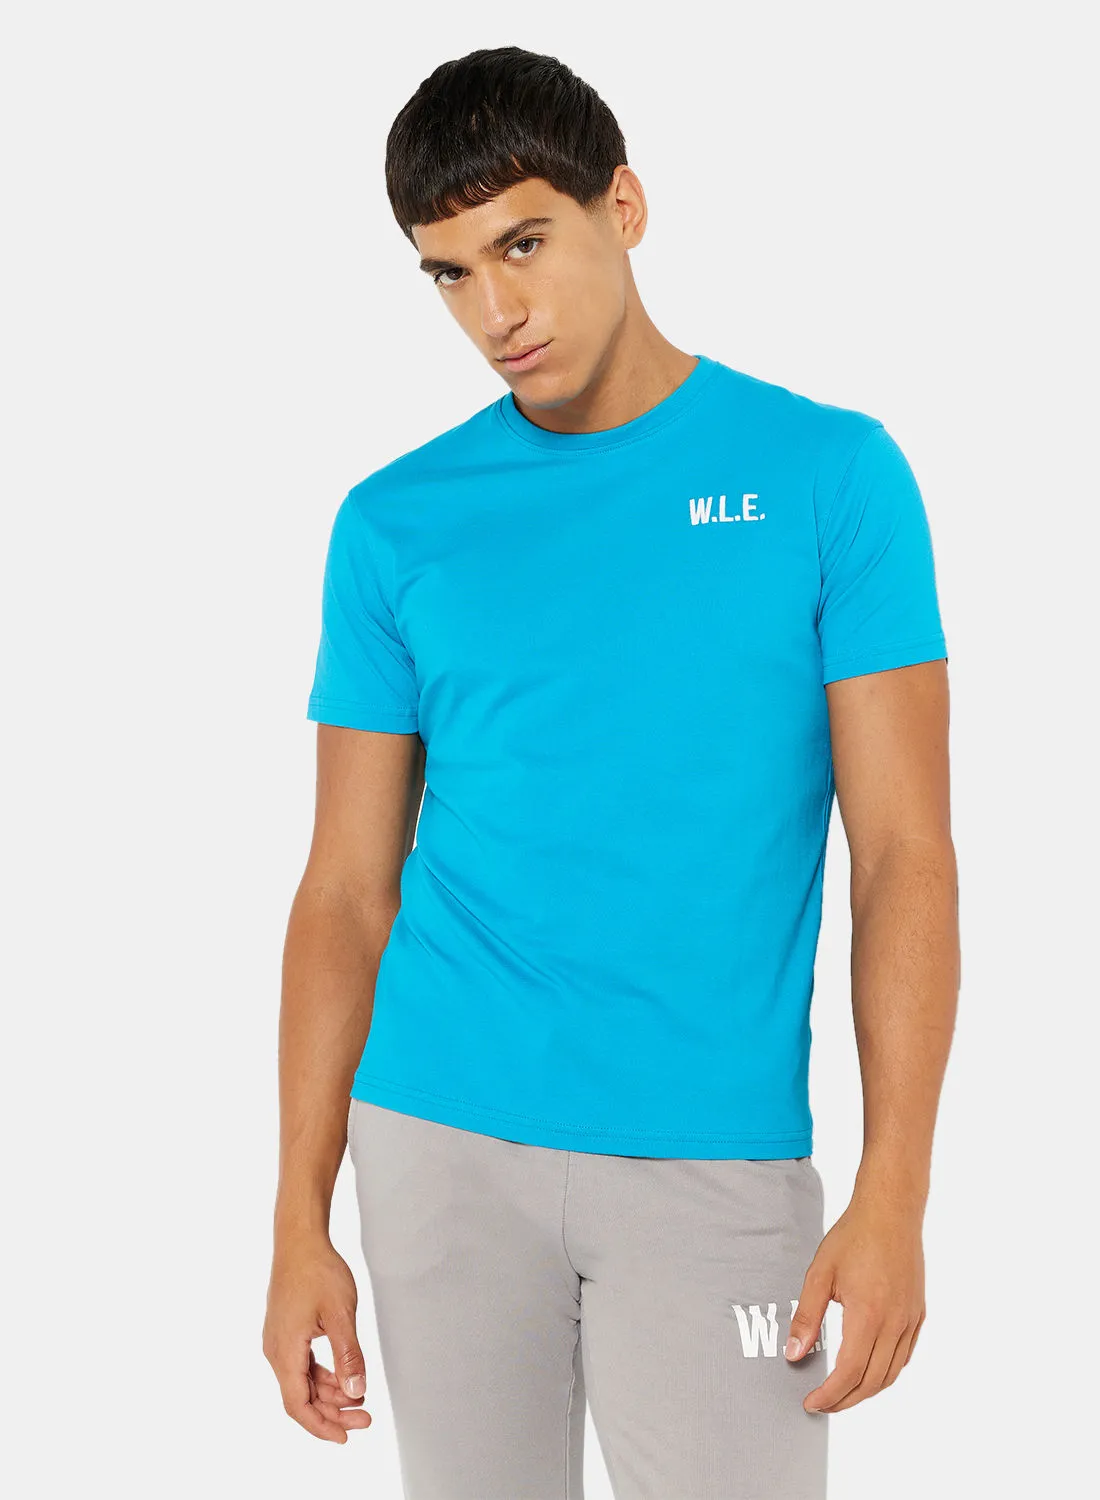 Sivvi x D'Atelier Eco-Friendly Logo Essential Crew T-Shirt Blue